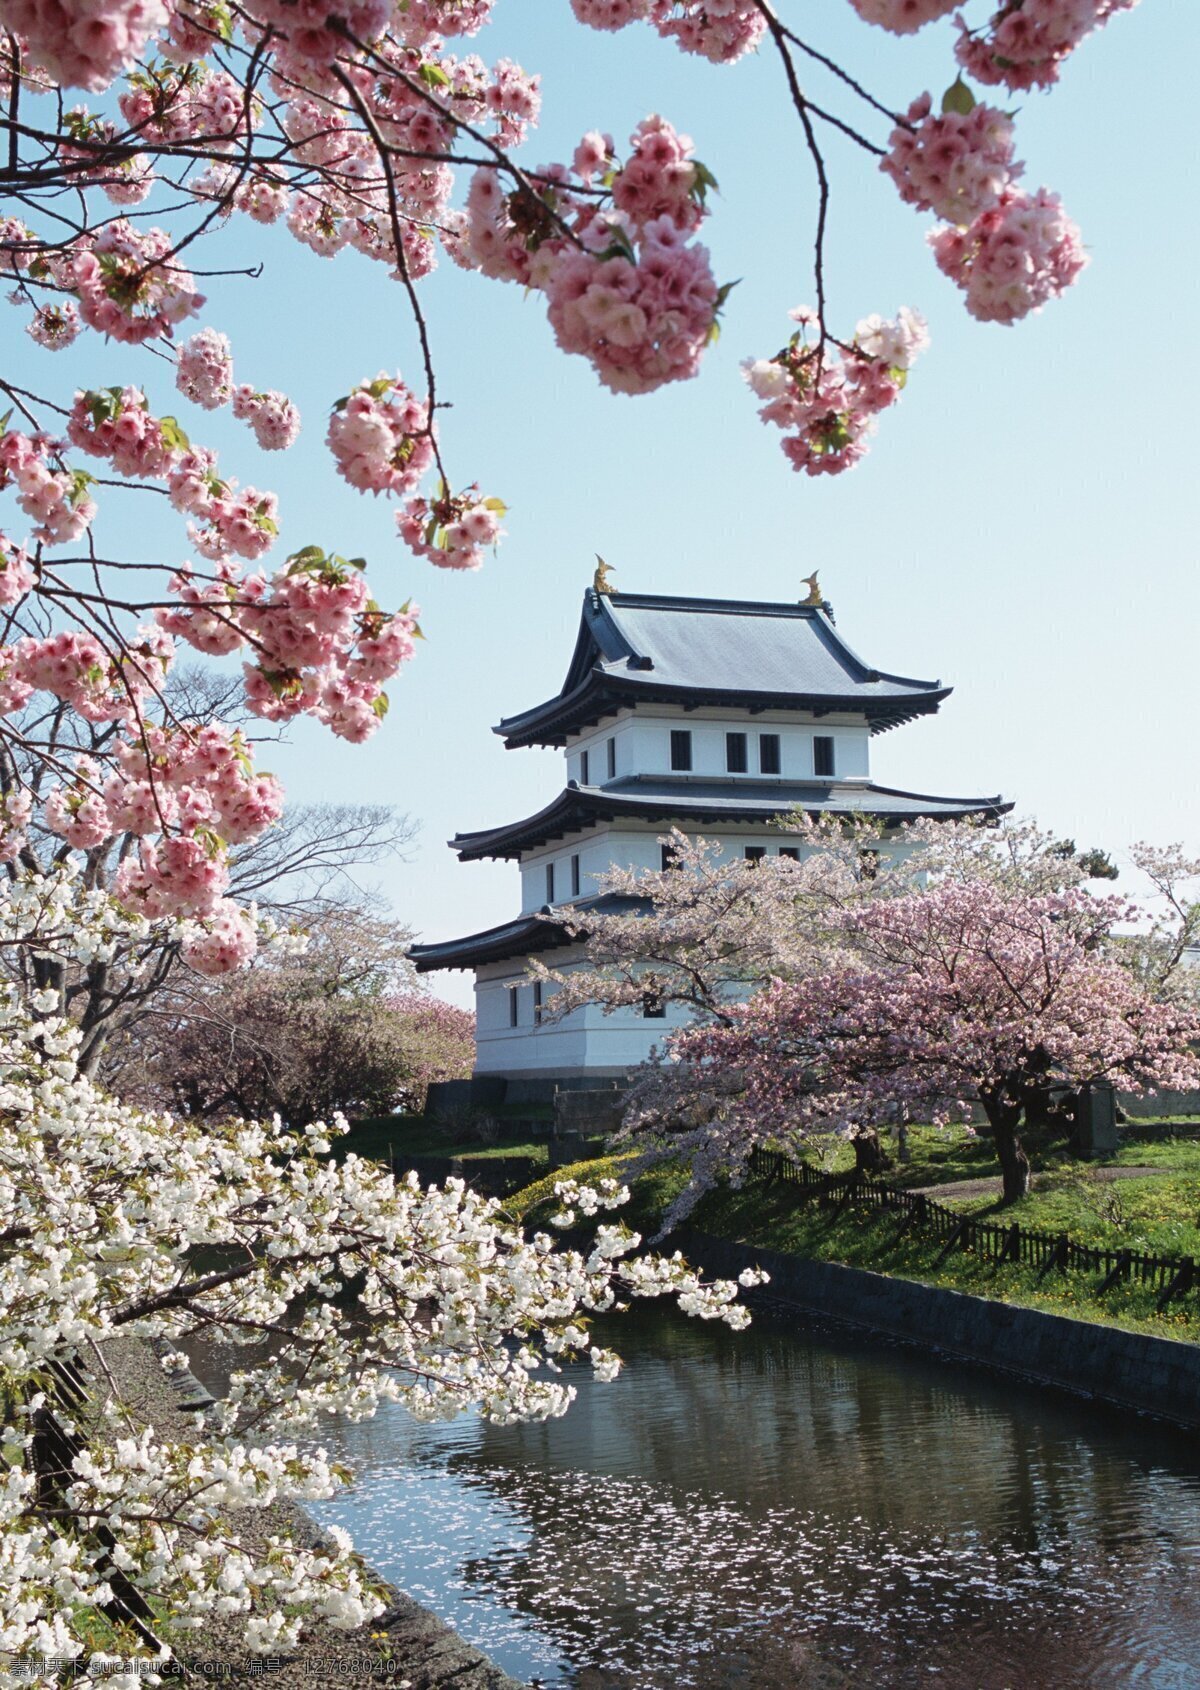 北海道 春季 美景 北海道美景 北海道风景 风景 日本 日本风景 国外旅游 旅游摄影 建筑景观 自然景观